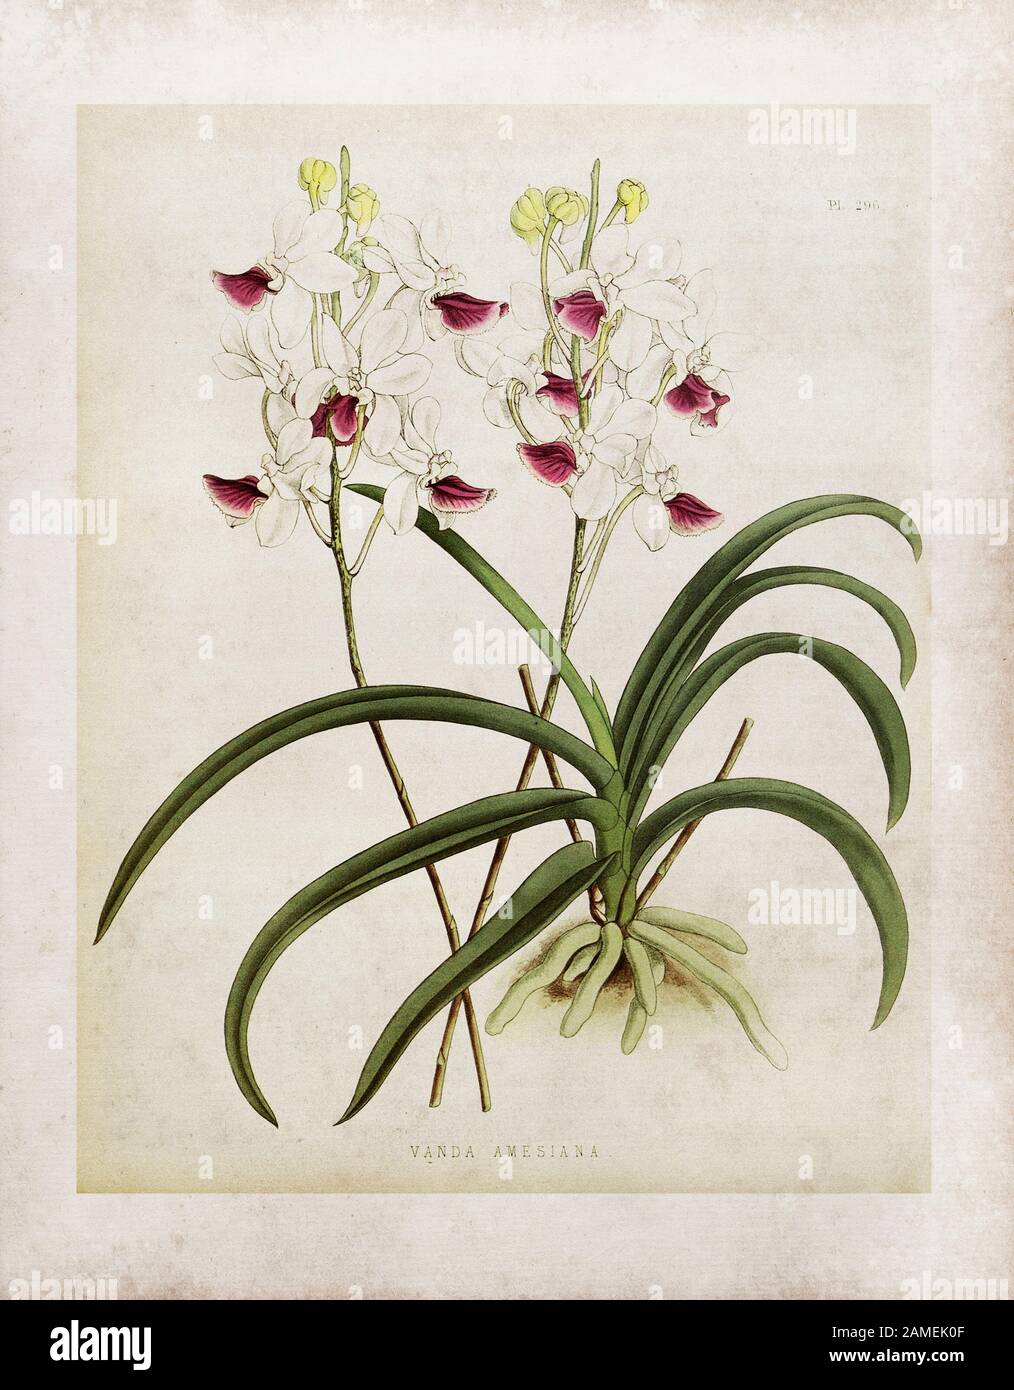 Holcoglossum amesianum (vanda amesiana) Holcoglossum amesianum est une espèce d'orchidée du genre Holcoglossum. Il est unique dans le royaume de l'usine comme th Banque D'Images